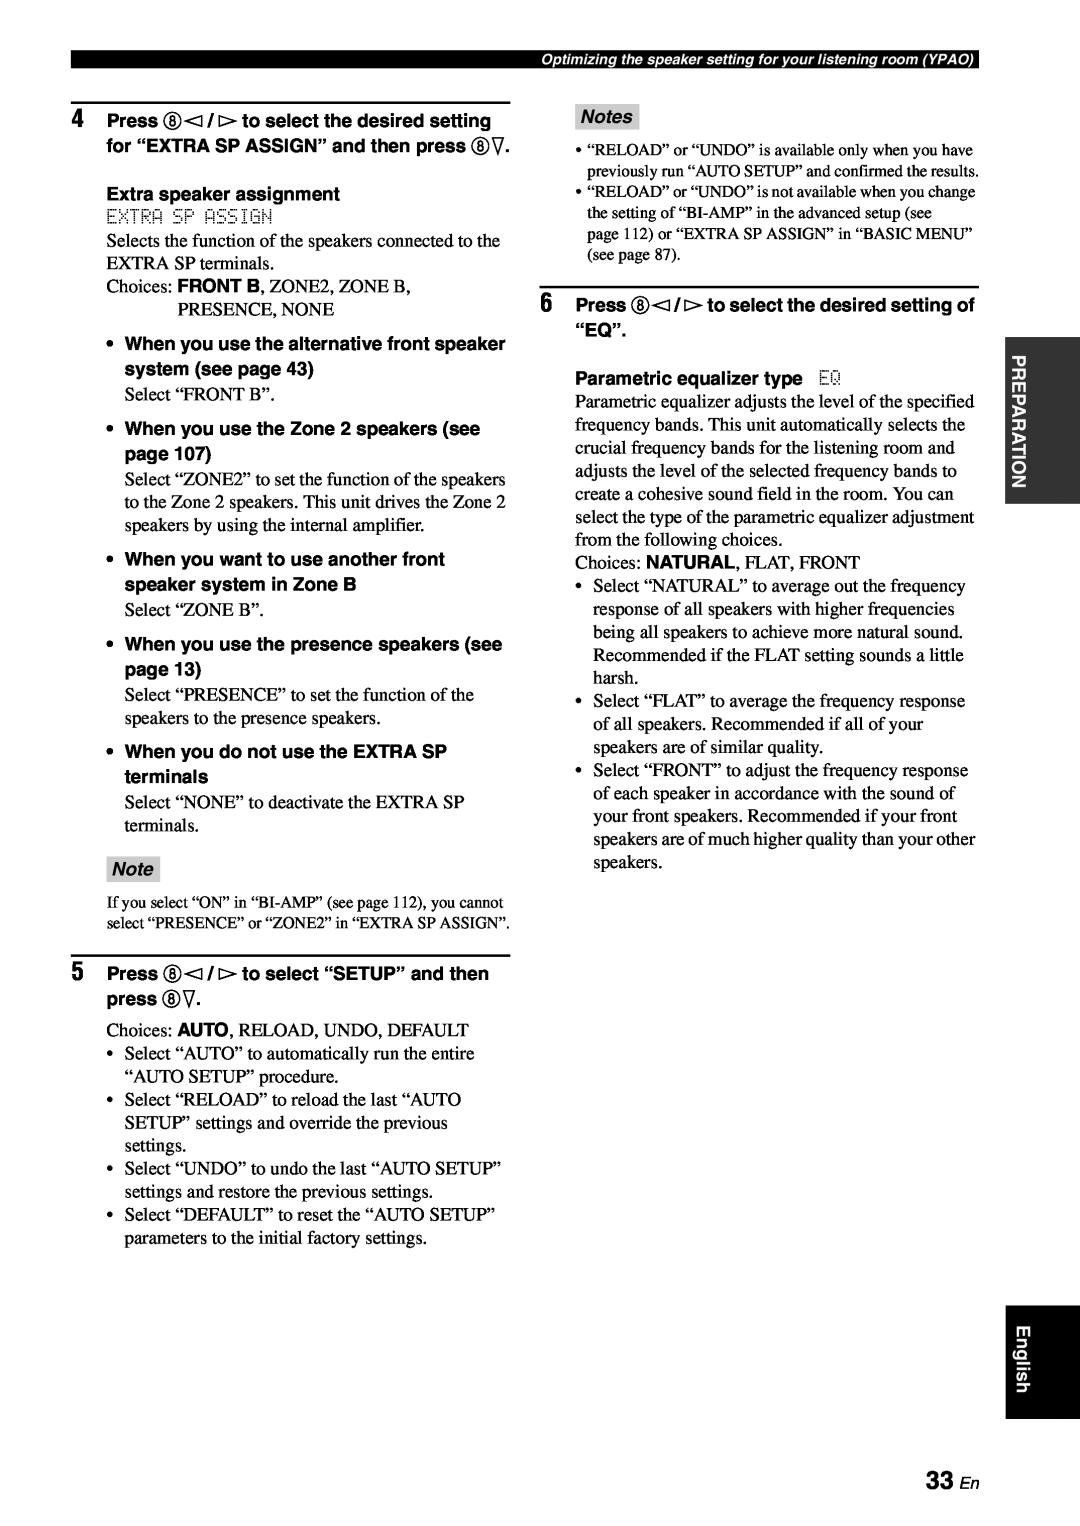 Yamaha RX-V863 owner manual 33 En, Notes 